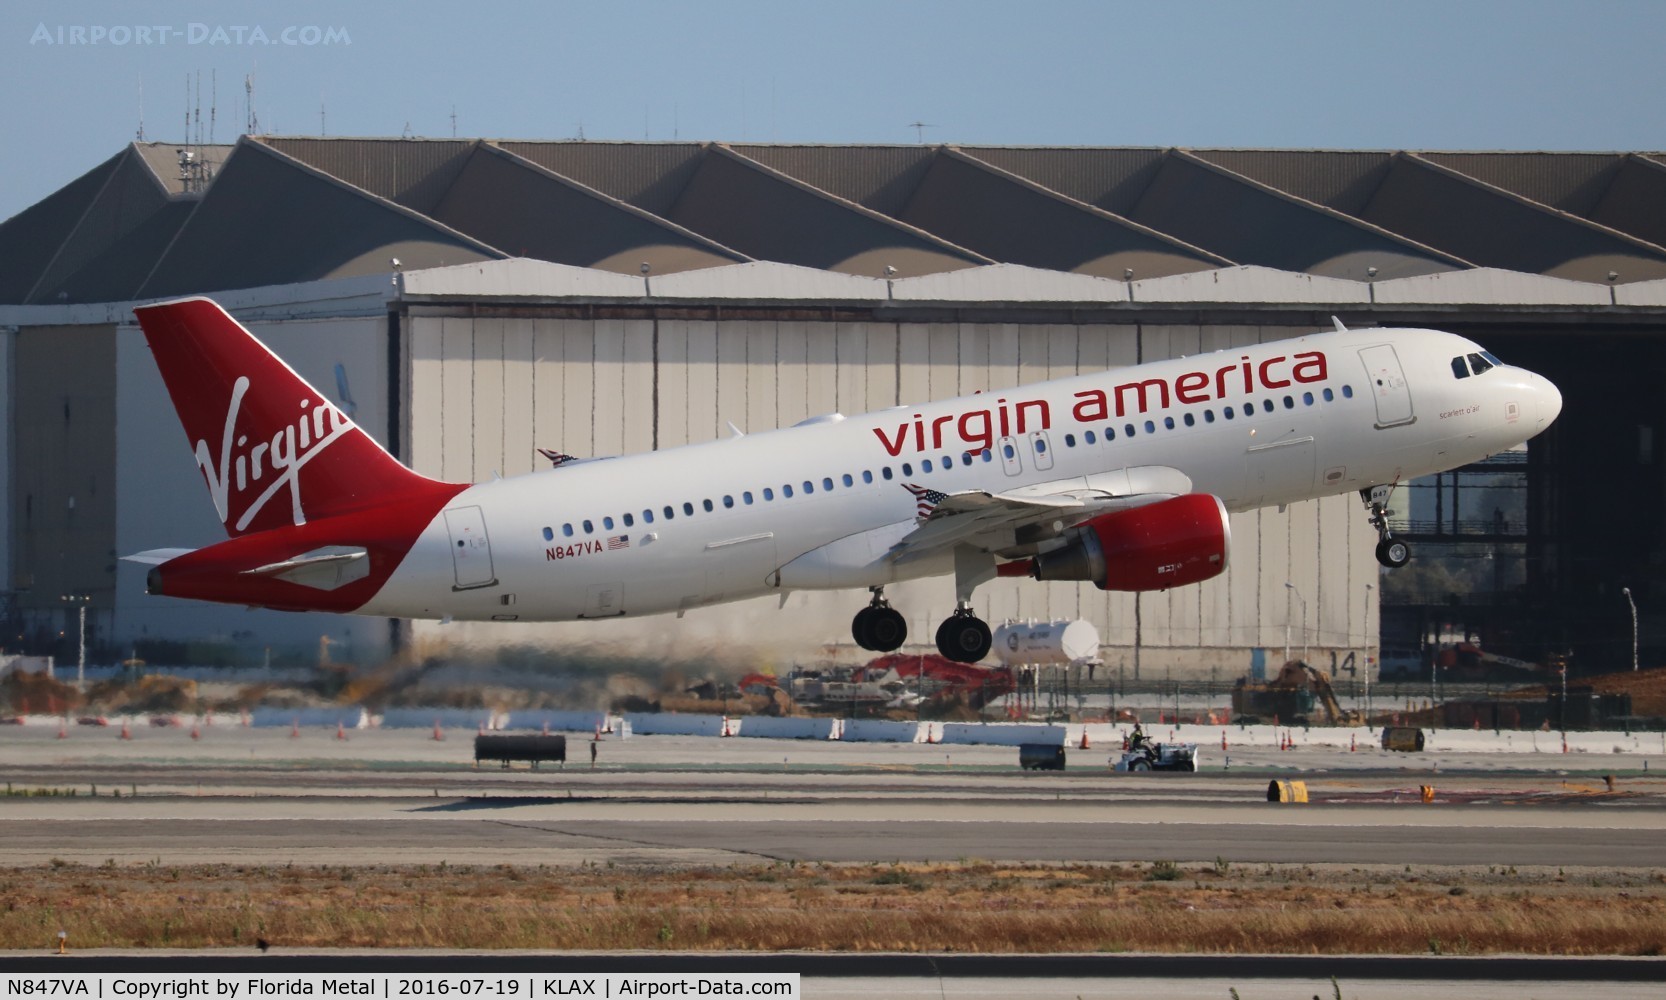 N847VA, 2011 Airbus A320-214 C/N 4948, Virgin America